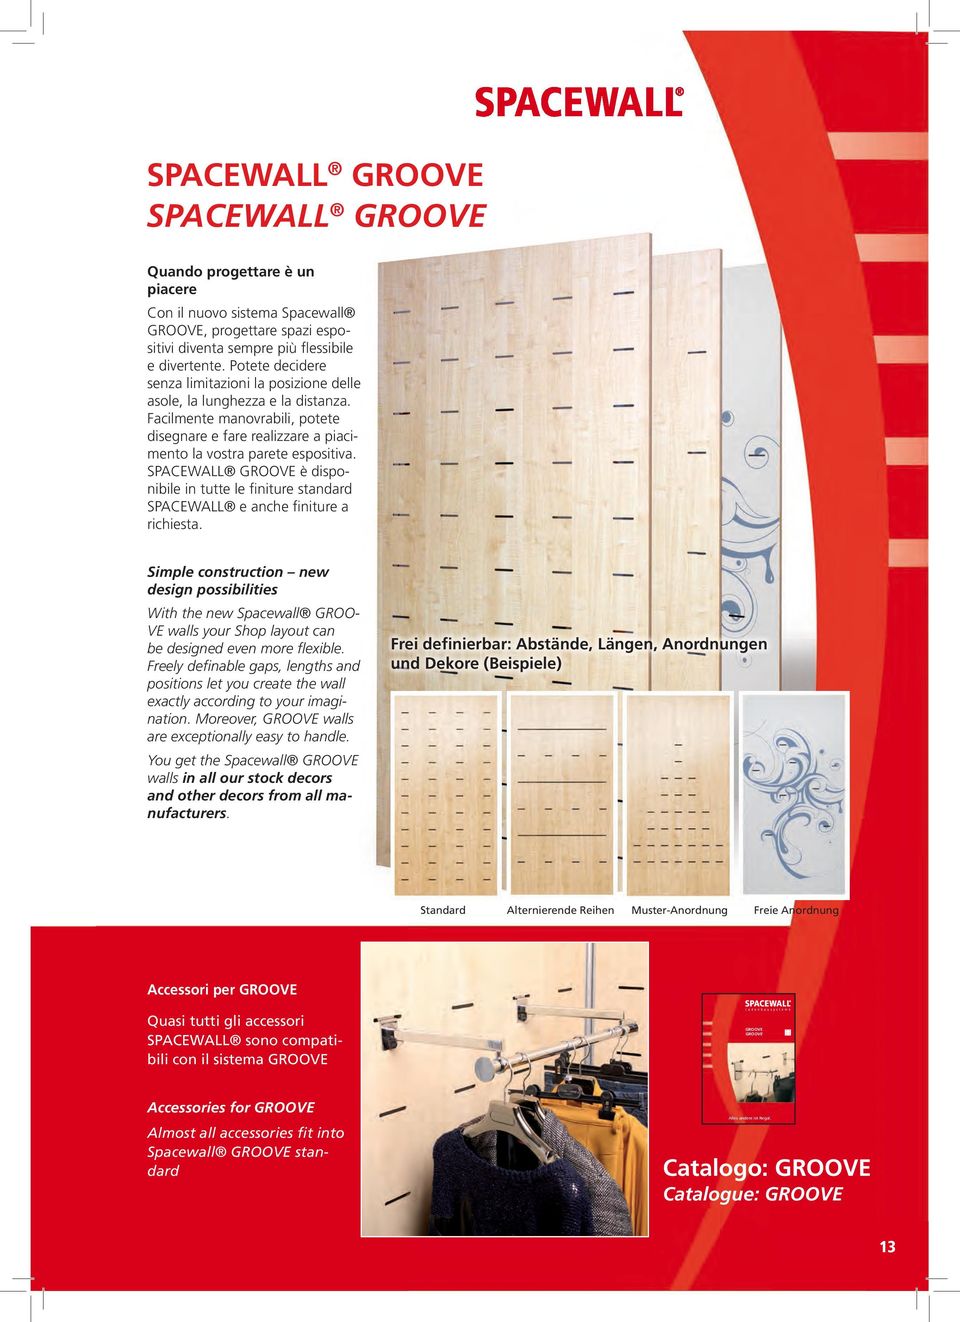 Sie erhalten die Spacewall GROOVE-Wände in allen unseren HMB-Lager-Dekoren sowie weiteren Sonderdekoren aller Hersteller.